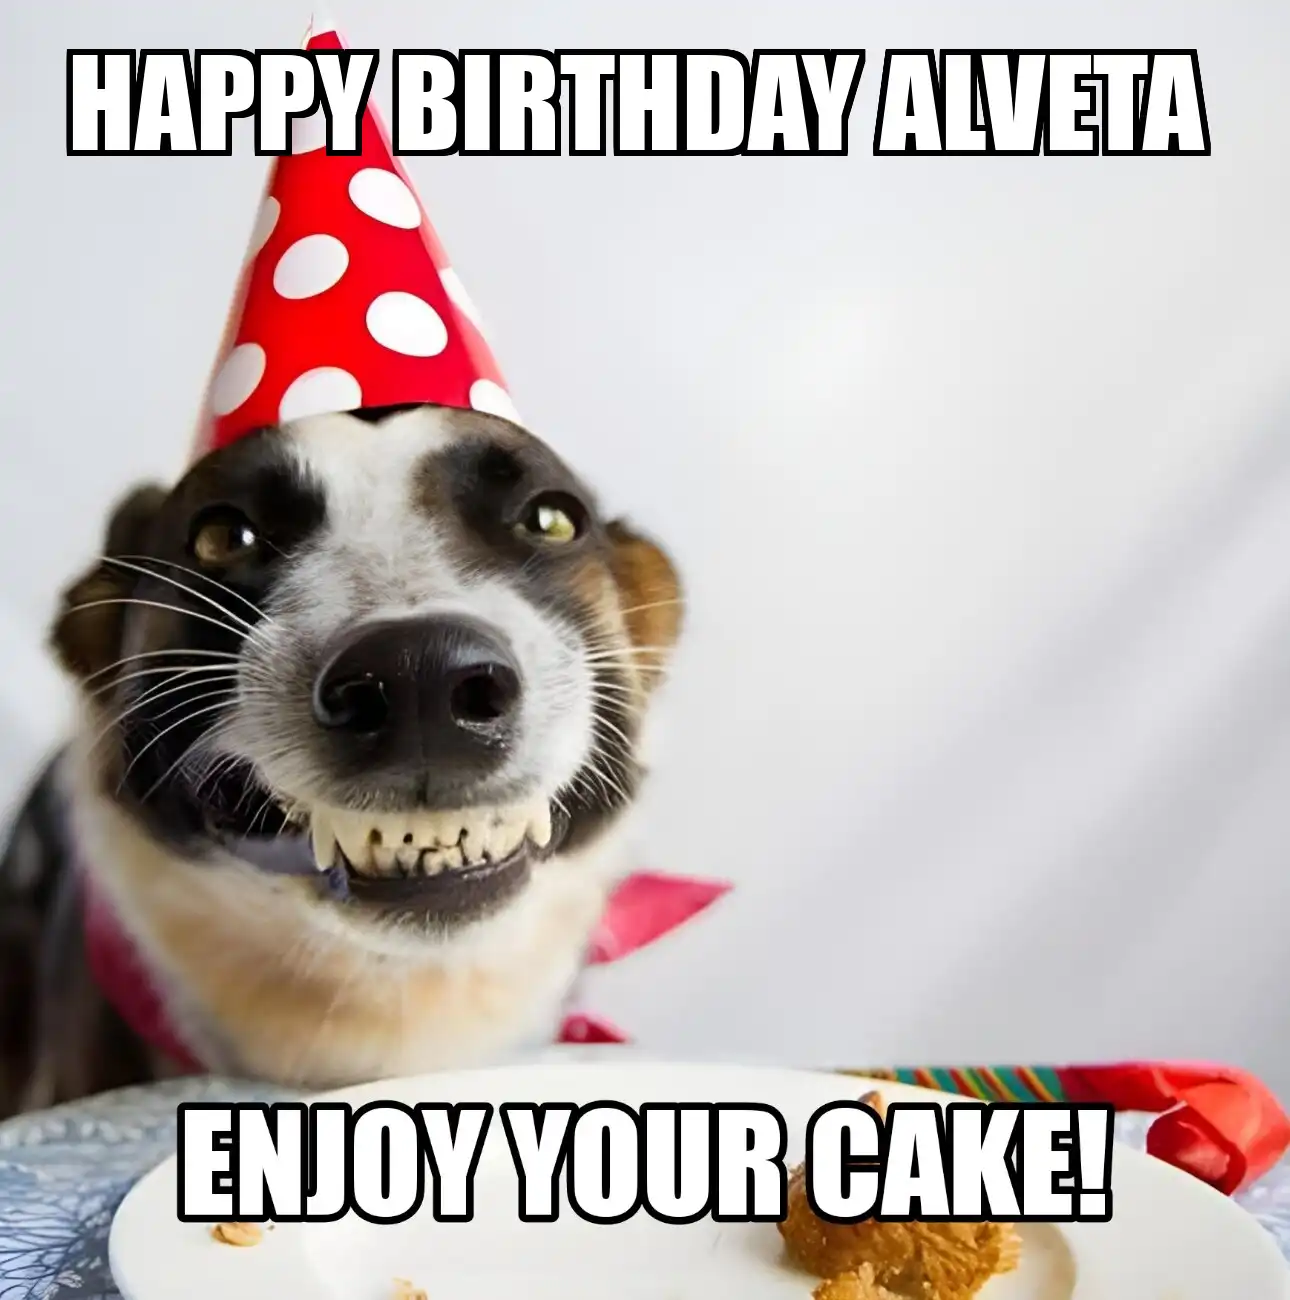 Happy Birthday Alveta Enjoy Your Cake Dog Meme